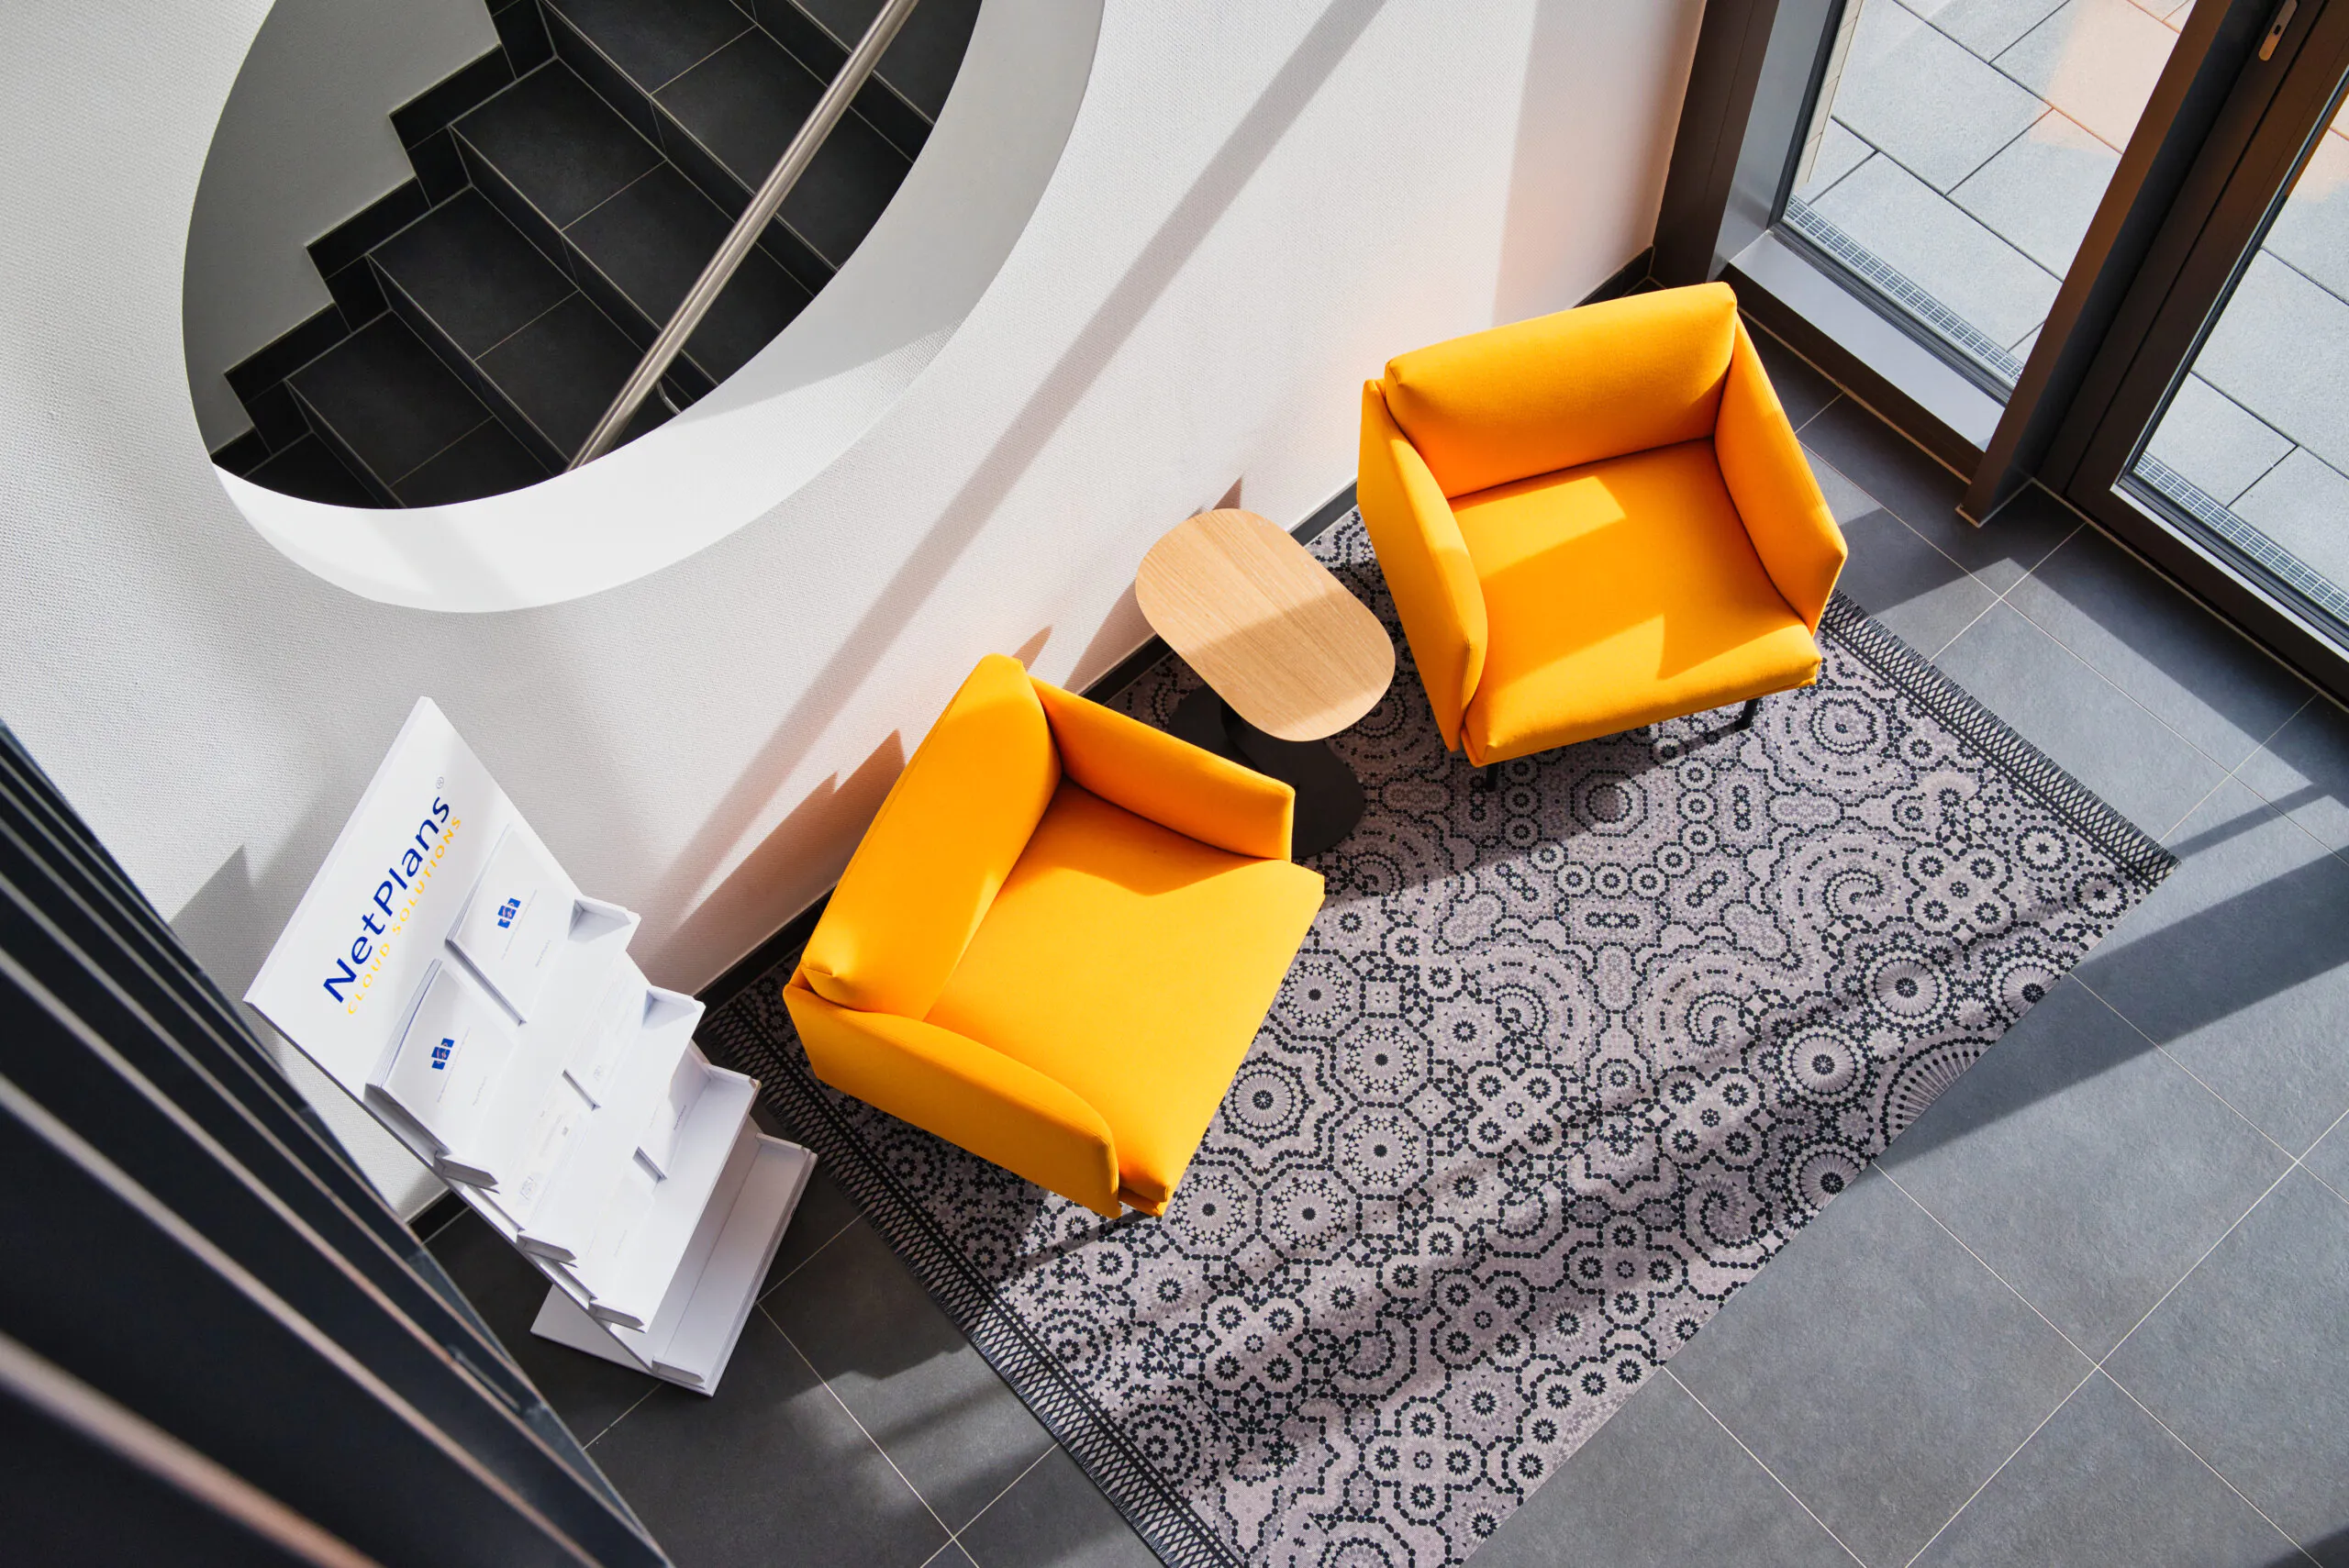 Vogelperspektive der Sitzecke im Treppenhaus mit orangenen Sesseln